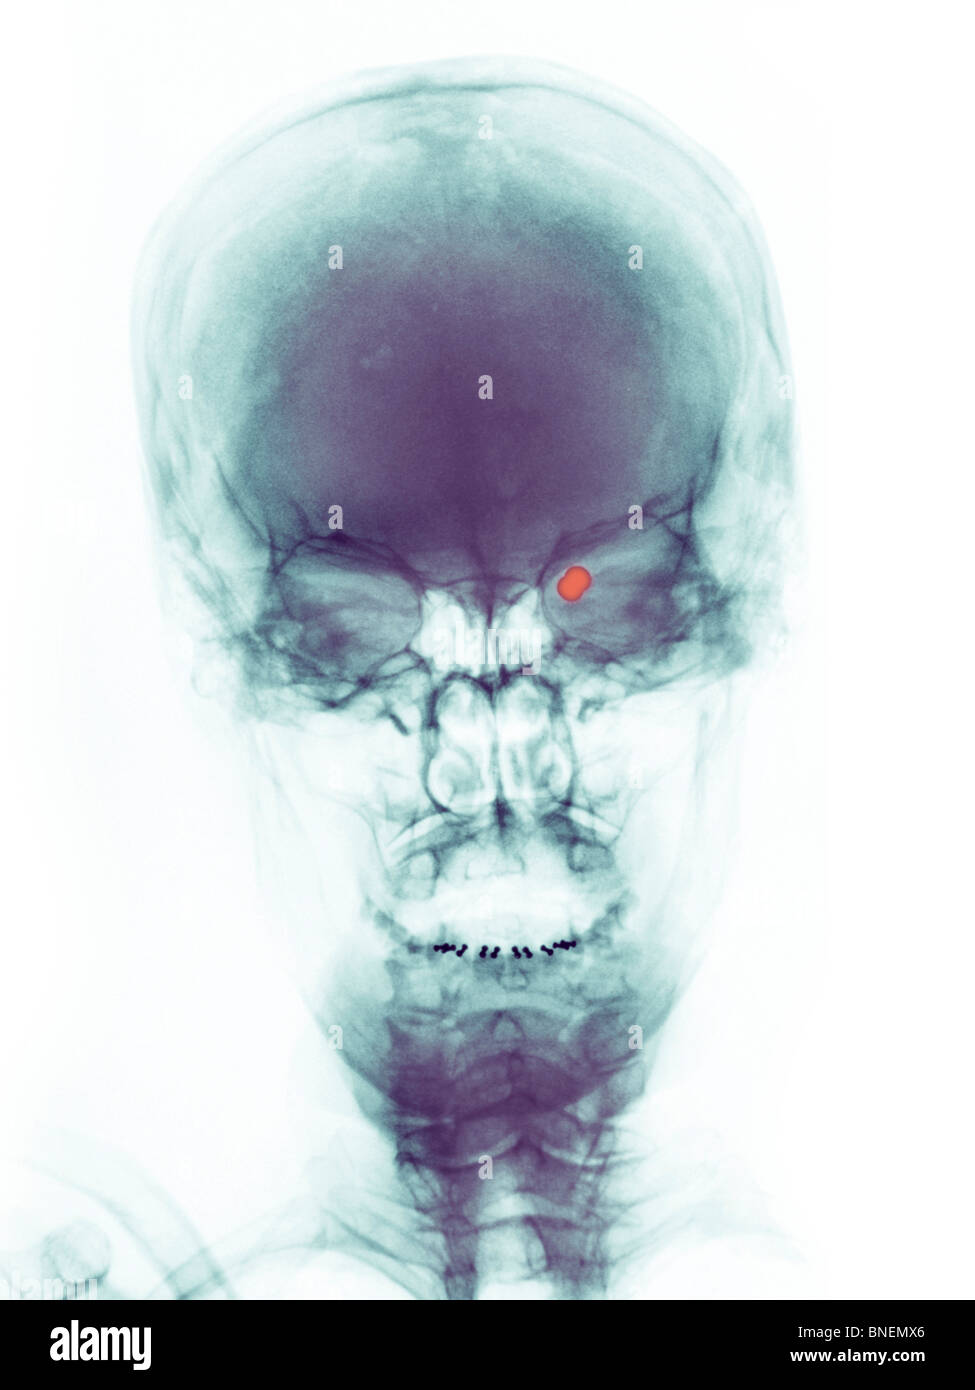 Rayons x du crâne d'une femme d'une balle dans l'oeil avec une arme à plombs. Banque D'Images